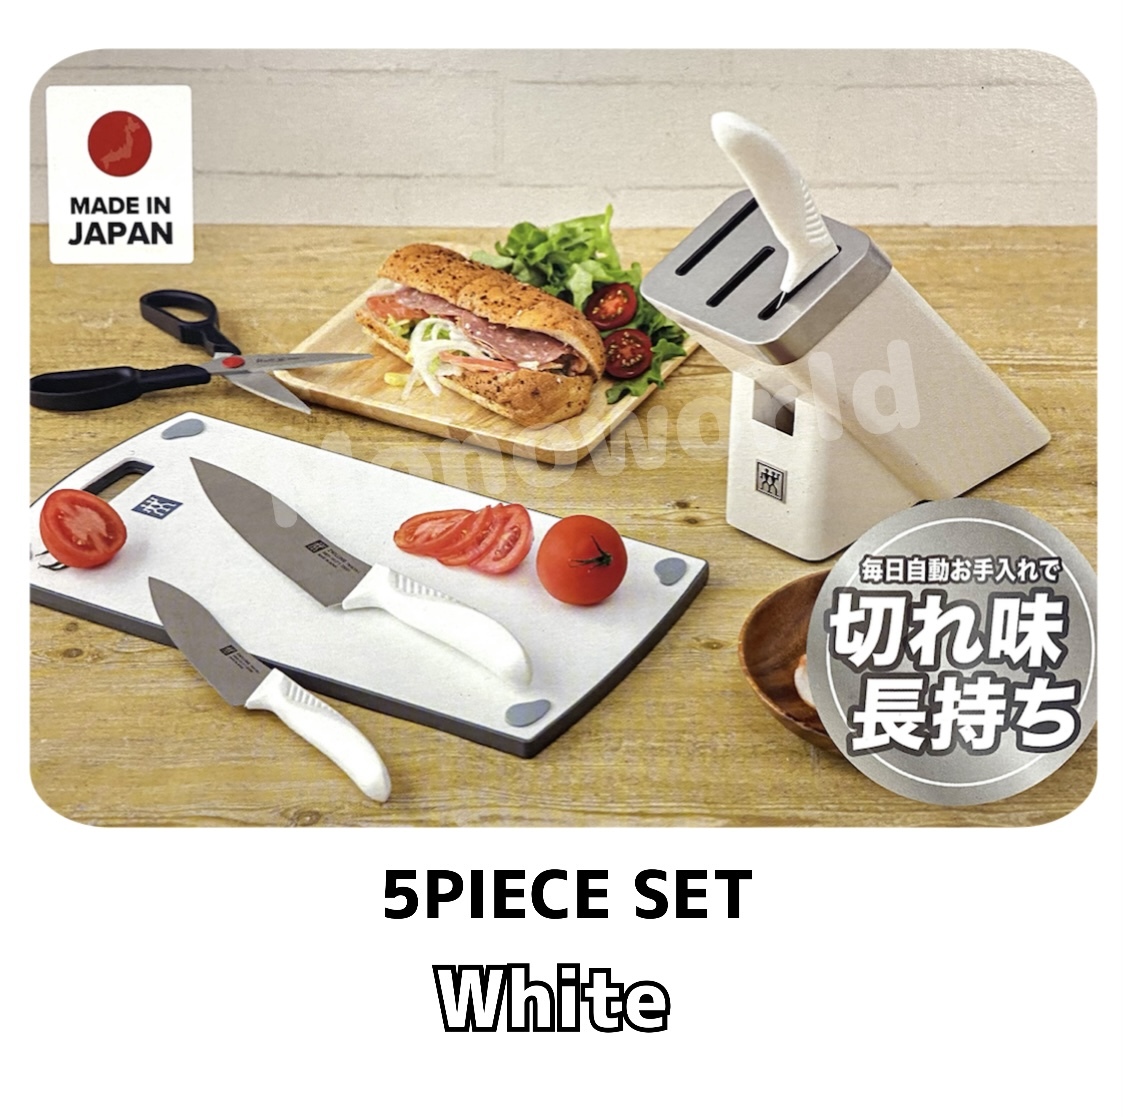 上品 【送料無料】ツヴィリング ナイフ ブロック 白5セット 調理器具